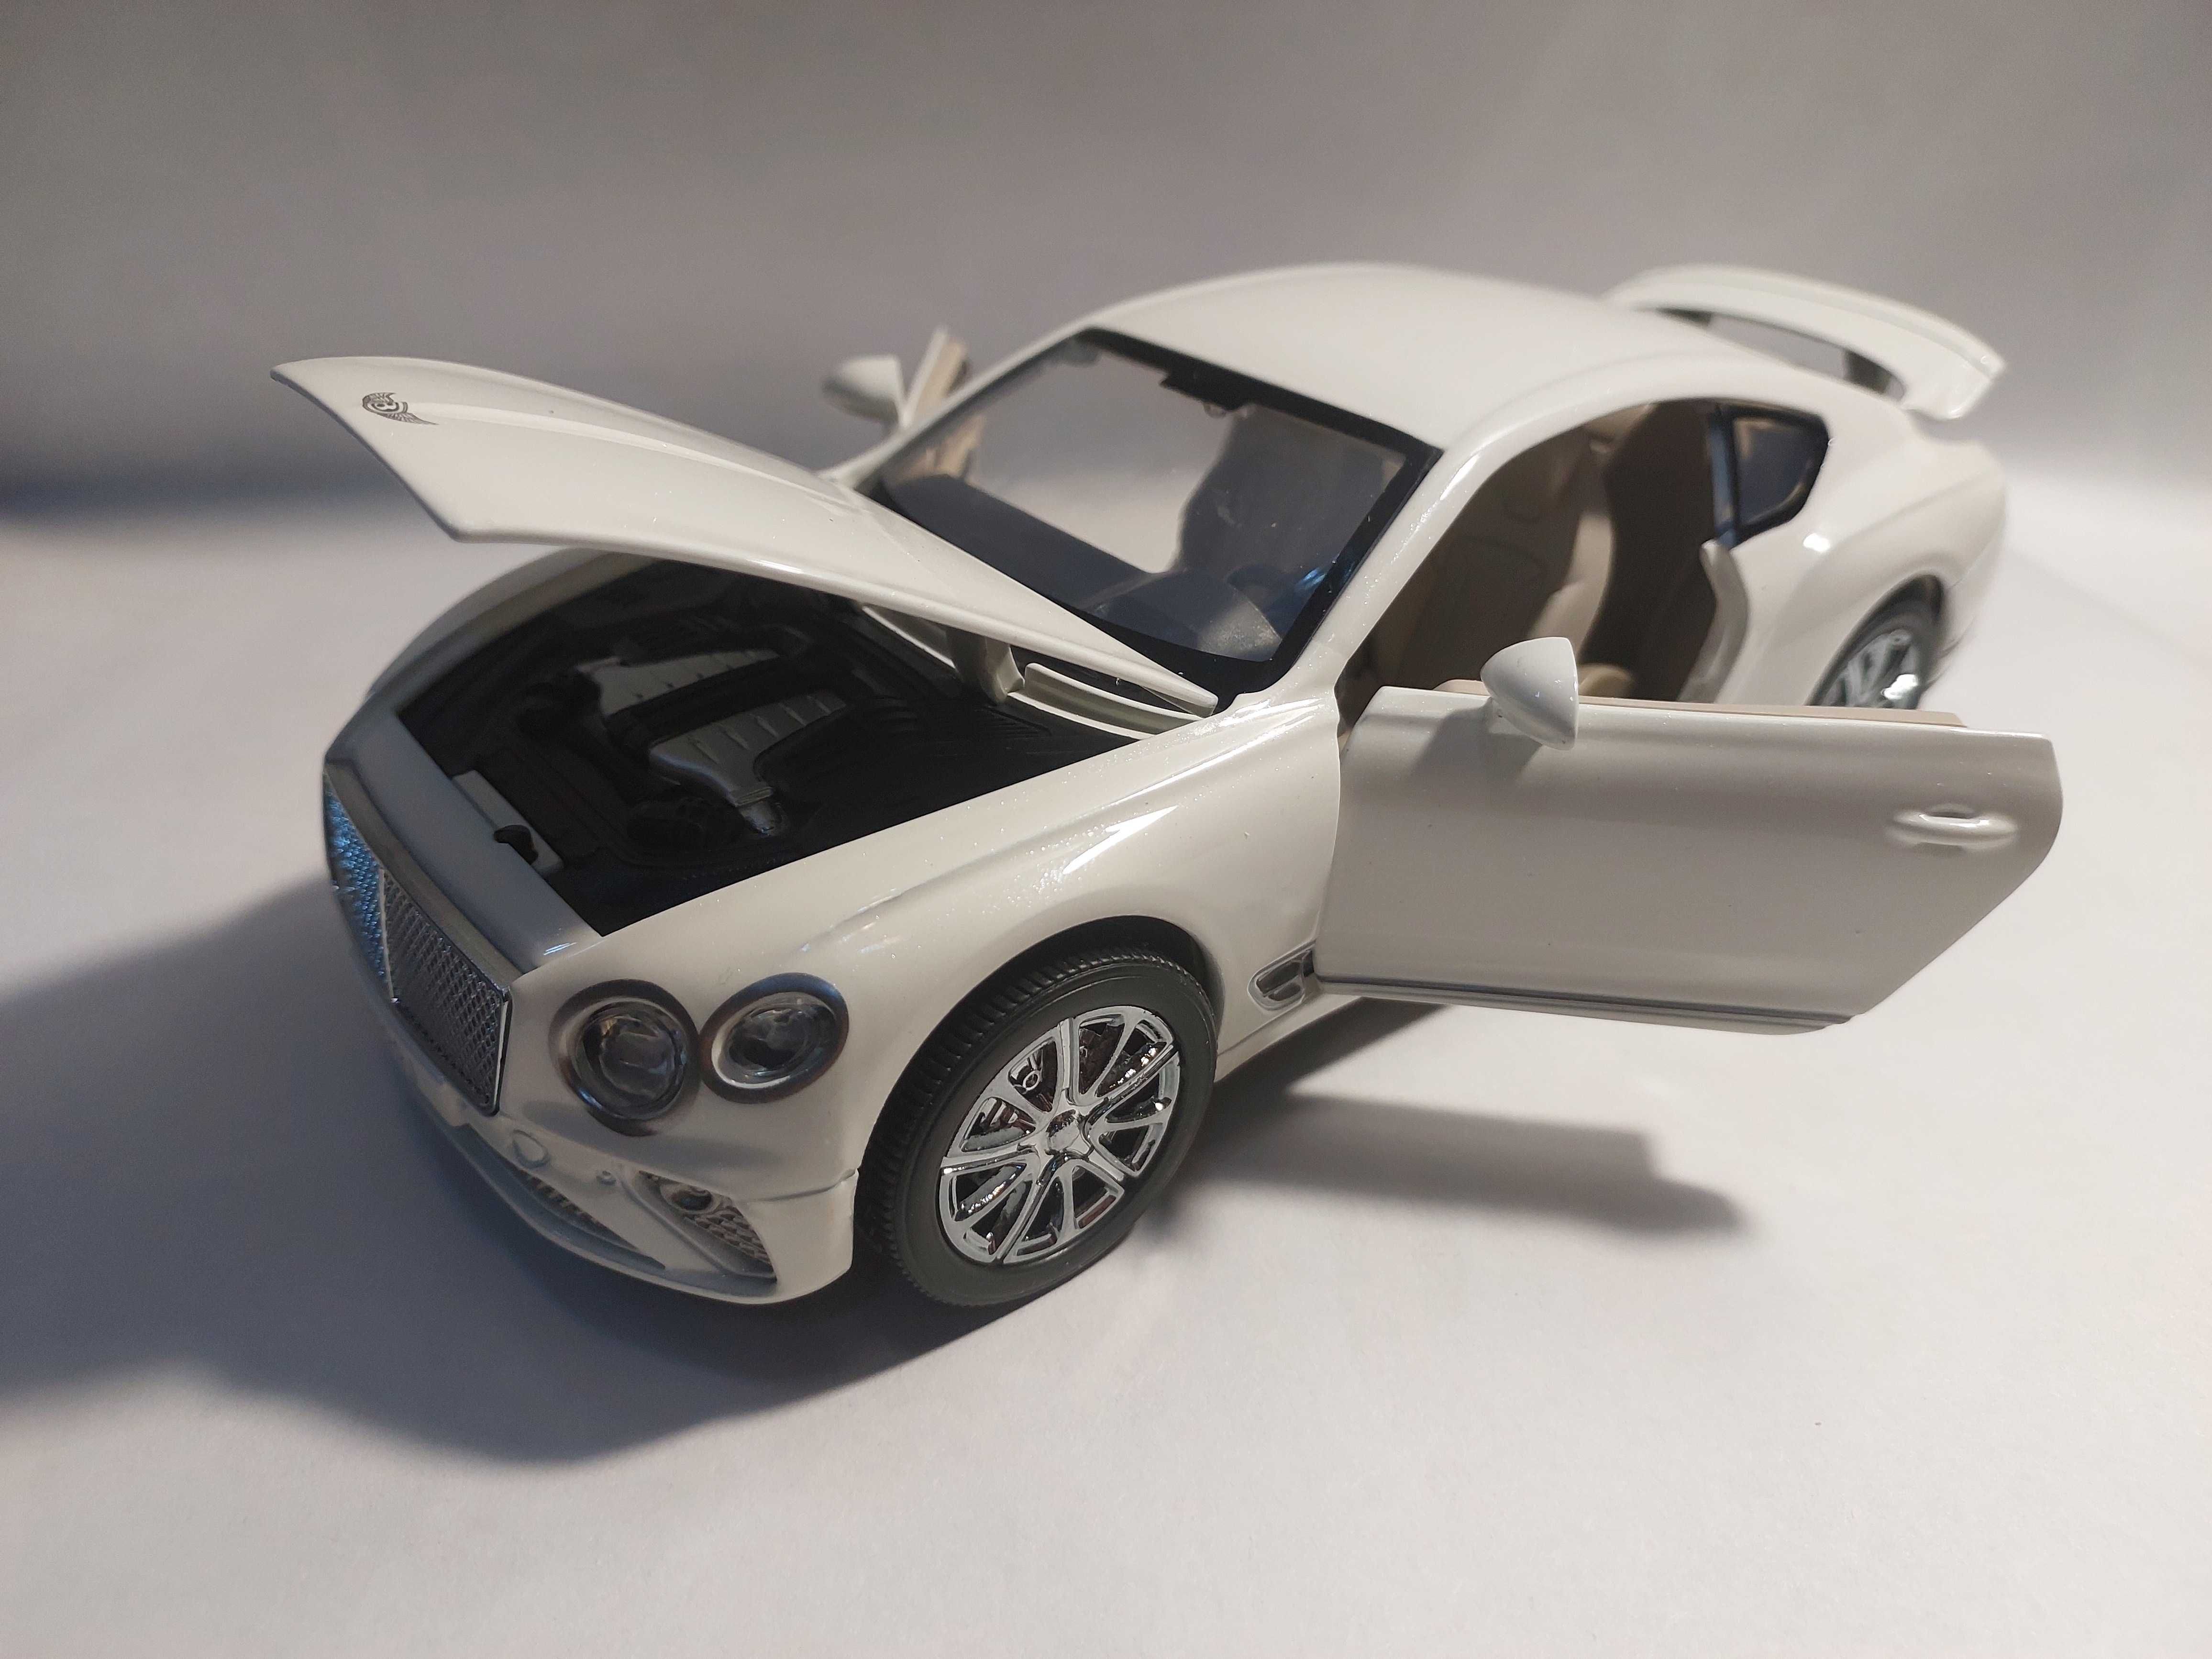 Macheta Bentley coupe  metal